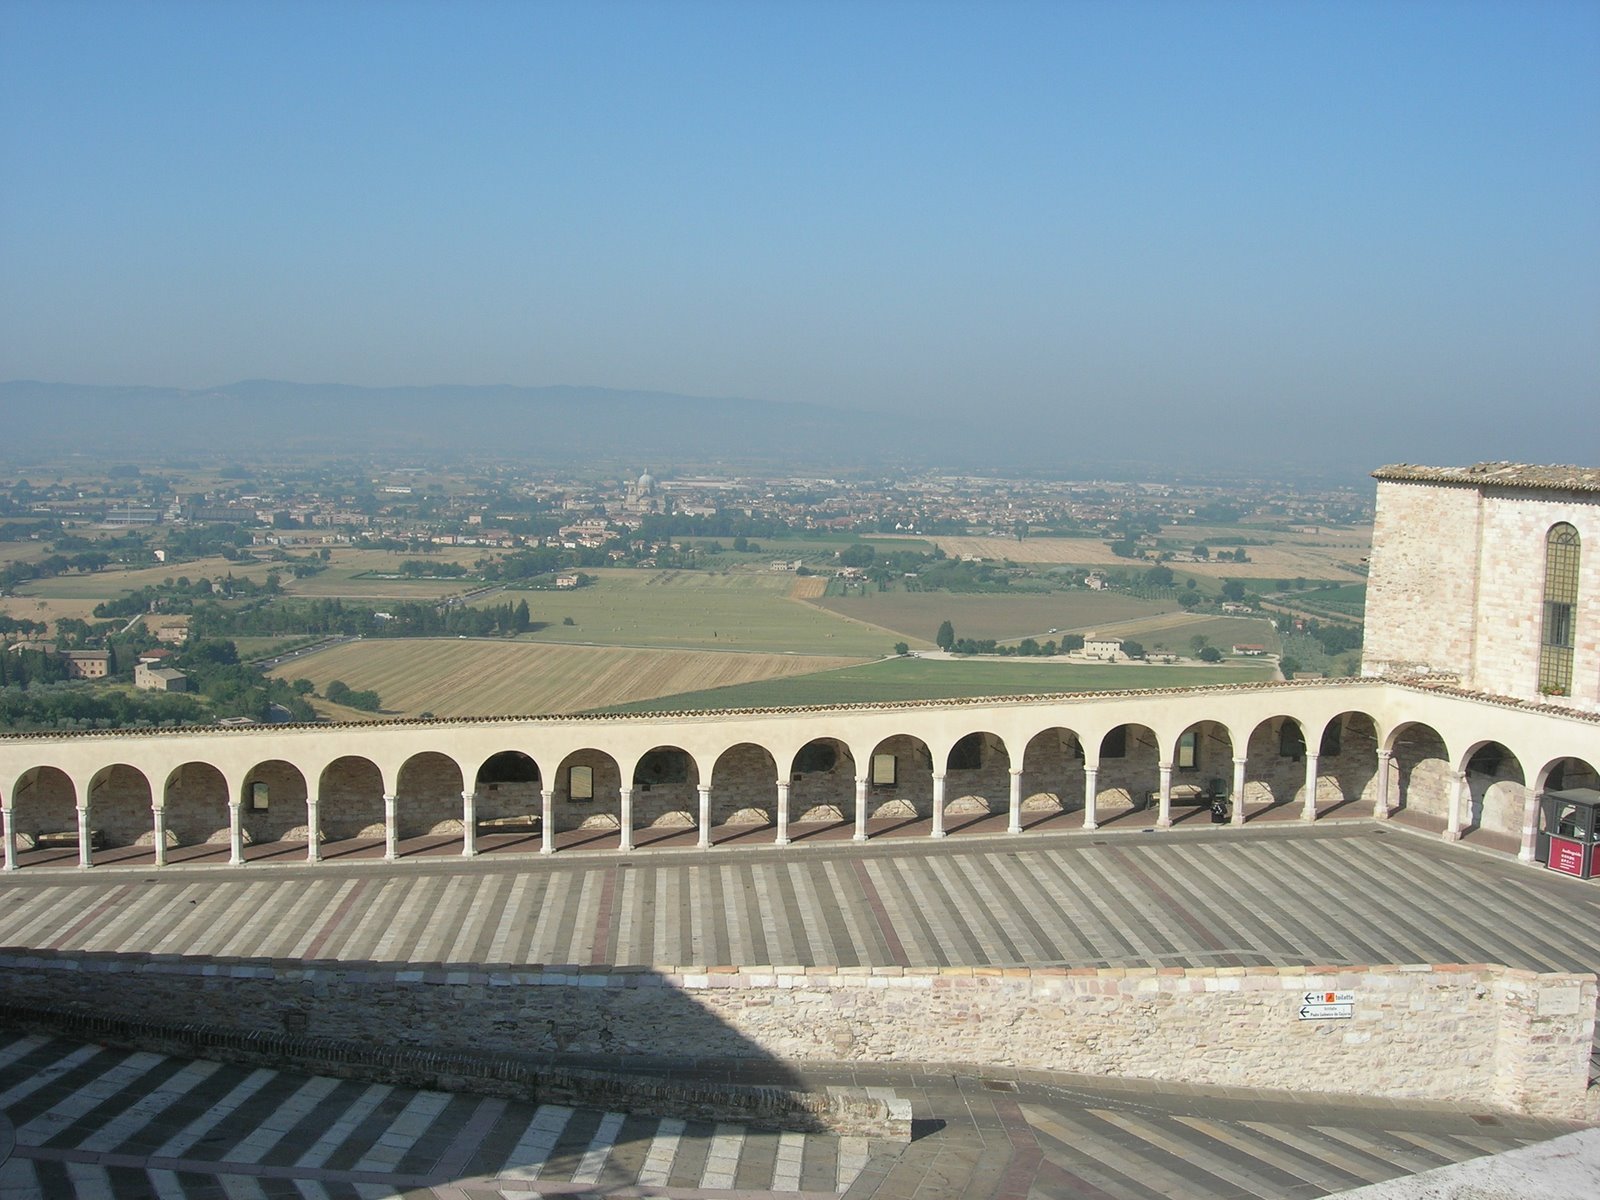 [William+Assisi+Basilica+galeria.jpg]